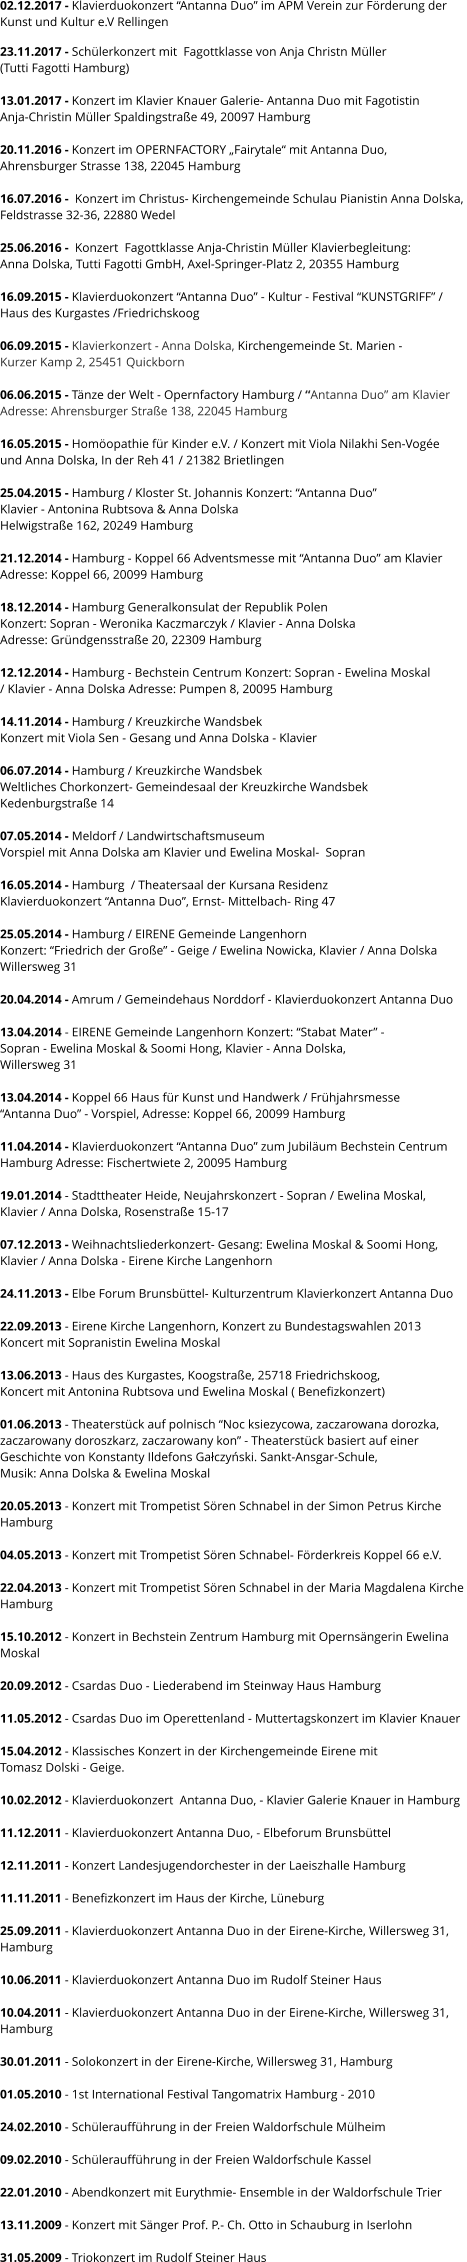 02.12.2017 - Klavierduokonzert “Antanna Duo” im APM Verein zur Förderung der  Kunst und Kultur e.V Rellingen  23.11.2017 - Schülerkonzert mit  Fagottklasse von Anja Christn Müller  (Tutti Fagotti Hamburg)  13.01.2017 - Konzert im Klavier Knauer Galerie- Antanna Duo mit Fagotistin  Anja-Christin Müller Spaldingstraße 49, 20097 Hamburg  20.11.2016 - Konzert im OPERNFACTORY „Fairytale“ mit Antanna Duo,  Ahrensburger Strasse 138, 22045 Hamburg   16.07.2016 -  Konzert im Christus- Kirchengemeinde Schulau Pianistin Anna Dolska, Feldstrasse 32-36, 22880 Wedel   25.06.2016 -  Konzert  Fagottklasse Anja-Christin Müller Klavierbegleitung:  Anna Dolska, Tutti Fagotti GmbH, Axel-Springer-Platz 2, 20355 Hamburg  16.09.2015 - Klavierduokonzert “Antanna Duo” - Kultur - Festival “KUNSTGRIFF” /  Haus des Kurgastes /Friedrichskoog   06.09.2015 - Klavierkonzert - Anna Dolska, Kirchengemeinde St. Marien -  Kurzer Kamp 2, 25451 Quickborn  06.06.2015 - Tänze der Welt - Opernfactory Hamburg / “Antanna Duo” am Klavier Adresse: Ahrensburger Straße 138, 22045 Hamburg  16.05.2015 - Homöopathie für Kinder e.V. / Konzert mit Viola Nilakhi Sen-Vogée  und Anna Dolska, In der Reh 41 / 21382 Brietlingen  25.04.2015 - Hamburg / Kloster St. Johannis Konzert: “Antanna Duo”  Klavier - Antonina Rubtsova & Anna Dolska  Helwigstraße 162, 20249 Hamburg  21.12.2014 - Hamburg - Koppel 66 Adventsmesse mit “Antanna Duo” am Klavier  Adresse: Koppel 66, 20099 Hamburg   18.12.2014 - Hamburg Generalkonsulat der Republik Polen  Konzert: Sopran - Weronika Kaczmarczyk / Klavier - Anna Dolska  Adresse: Gründgensstraße 20, 22309 Hamburg   12.12.2014 - Hamburg - Bechstein Centrum Konzert: Sopran - Ewelina Moskal  / Klavier - Anna Dolska Adresse: Pumpen 8, 20095 Hamburg  14.11.2014 - Hamburg / Kreuzkirche Wandsbek Konzert mit Viola Sen - Gesang und Anna Dolska - Klavier  06.07.2014 - Hamburg / Kreuzkirche Wandsbek Weltliches Chorkonzert- Gemeindesaal der Kreuzkirche Wandsbek Kedenburgstraße 14  07.05.2014 - Meldorf / Landwirtschaftsmuseum Vorspiel mit Anna Dolska am Klavier und Ewelina Moskal-  Sopran  16.05.2014 - Hamburg  / Theatersaal der Kursana Residenz  Klavierduokonzert “Antanna Duo”, Ernst- Mittelbach- Ring 47  25.05.2014 - Hamburg / EIRENE Gemeinde Langenhorn  Konzert: “Friedrich der Große” - Geige / Ewelina Nowicka, Klavier / Anna Dolska Willersweg 31   20.04.2014 - Amrum / Gemeindehaus Norddorf - Klavierduokonzert Antanna Duo  13.04.2014 - EIRENE Gemeinde Langenhorn Konzert: “Stabat Mater” - Sopran - Ewelina Moskal & Soomi Hong, Klavier - Anna Dolska,  Willersweg 31  13.04.2014 - Koppel 66 Haus für Kunst und Handwerk / Frühjahrsmesse “Antanna Duo” - Vorspiel, Adresse: Koppel 66, 20099 Hamburg  11.04.2014 - Klavierduokonzert “Antanna Duo” zum Jubiläum Bechstein Centrum  Hamburg Adresse: Fischertwiete 2, 20095 Hamburg  19.01.2014 - Stadttheater Heide, Neujahrskonzert - Sopran / Ewelina Moskal,  Klavier / Anna Dolska, Rosenstraße 15-17  07.12.2013 - Weihnachtsliederkonzert- Gesang: Ewelina Moskal & Soomi Hong,  Klavier / Anna Dolska - Eirene Kirche Langenhorn  24.11.2013 - Elbe Forum Brunsbüttel- Kulturzentrum Klavierkonzert Antanna Duo  22.09.2013 - Eirene Kirche Langenhorn, Konzert zu Bundestagswahlen 2013 Koncert mit Sopranistin Ewelina Moskal  13.06.2013 - Haus des Kurgastes, Koogstraße, 25718 Friedrichskoog, Koncert mit Antonina Rubtsova und Ewelina Moskal ( Benefizkonzert)  01.06.2013 - Theaterstück auf polnisch “Noc ksiezycowa, zaczarowana dorozka,  zaczarowany doroszkarz, zaczarowany kon” - Theaterstück basiert auf einer Geschichte von Konstanty Ildefons Gałczyński. Sankt-Ansgar-Schule,  Musik: Anna Dolska & Ewelina Moskal  20.05.2013 - Konzert mit Trompetist Sören Schnabel in der Simon Petrus Kirche  Hamburg  04.05.2013 - Konzert mit Trompetist Sören Schnabel- Förderkreis Koppel 66 e.V.    22.04.2013 - Konzert mit Trompetist Sören Schnabel in der Maria Magdalena Kirche  Hamburg      15.10.2012 - Konzert in Bechstein Zentrum Hamburg mit Opernsängerin Ewelina  Moskal  20.09.2012 - Csardas Duo - Liederabend im Steinway Haus Hamburg  11.05.2012 - Csardas Duo im Operettenland - Muttertagskonzert im Klavier Knauer  15.04.2012 - Klassisches Konzert in der Kirchengemeinde Eirene mit  Tomasz Dolski - Geige.  10.02.2012 - Klavierduokonzert  Antanna Duo, - Klavier Galerie Knauer in Hamburg  11.12.2011 - Klavierduokonzert Antanna Duo, - Elbeforum Brunsbüttel  12.11.2011 - Konzert Landesjugendorchester in der Laeiszhalle Hamburg  11.11.2011 - Benefizkonzert im Haus der Kirche, Lüneburg  25.09.2011 - Klavierduokonzert Antanna Duo in der Eirene-Kirche, Willersweg 31,  Hamburg  10.06.2011 - Klavierduokonzert Antanna Duo im Rudolf Steiner Haus  10.04.2011 - Klavierduokonzert Antanna Duo in der Eirene-Kirche, Willersweg 31,  Hamburg  30.01.2011 - Solokonzert in der Eirene-Kirche, Willersweg 31, Hamburg  01.05.2010 - 1st International Festival Tangomatrix Hamburg - 2010  24.02.2010 - Schüleraufführung in der Freien Waldorfschule Mülheim  09.02.2010 - Schüleraufführung in der Freien Waldorfschule Kassel  22.01.2010 - Abendkonzert mit Eurythmie- Ensemble in der Waldorfschule Trier  13.11.2009 - Konzert mit Sänger Prof. P.- Ch. Otto in Schauburg in Iserlohn  31.05.2009 - Triokonzert im Rudolf Steiner Haus